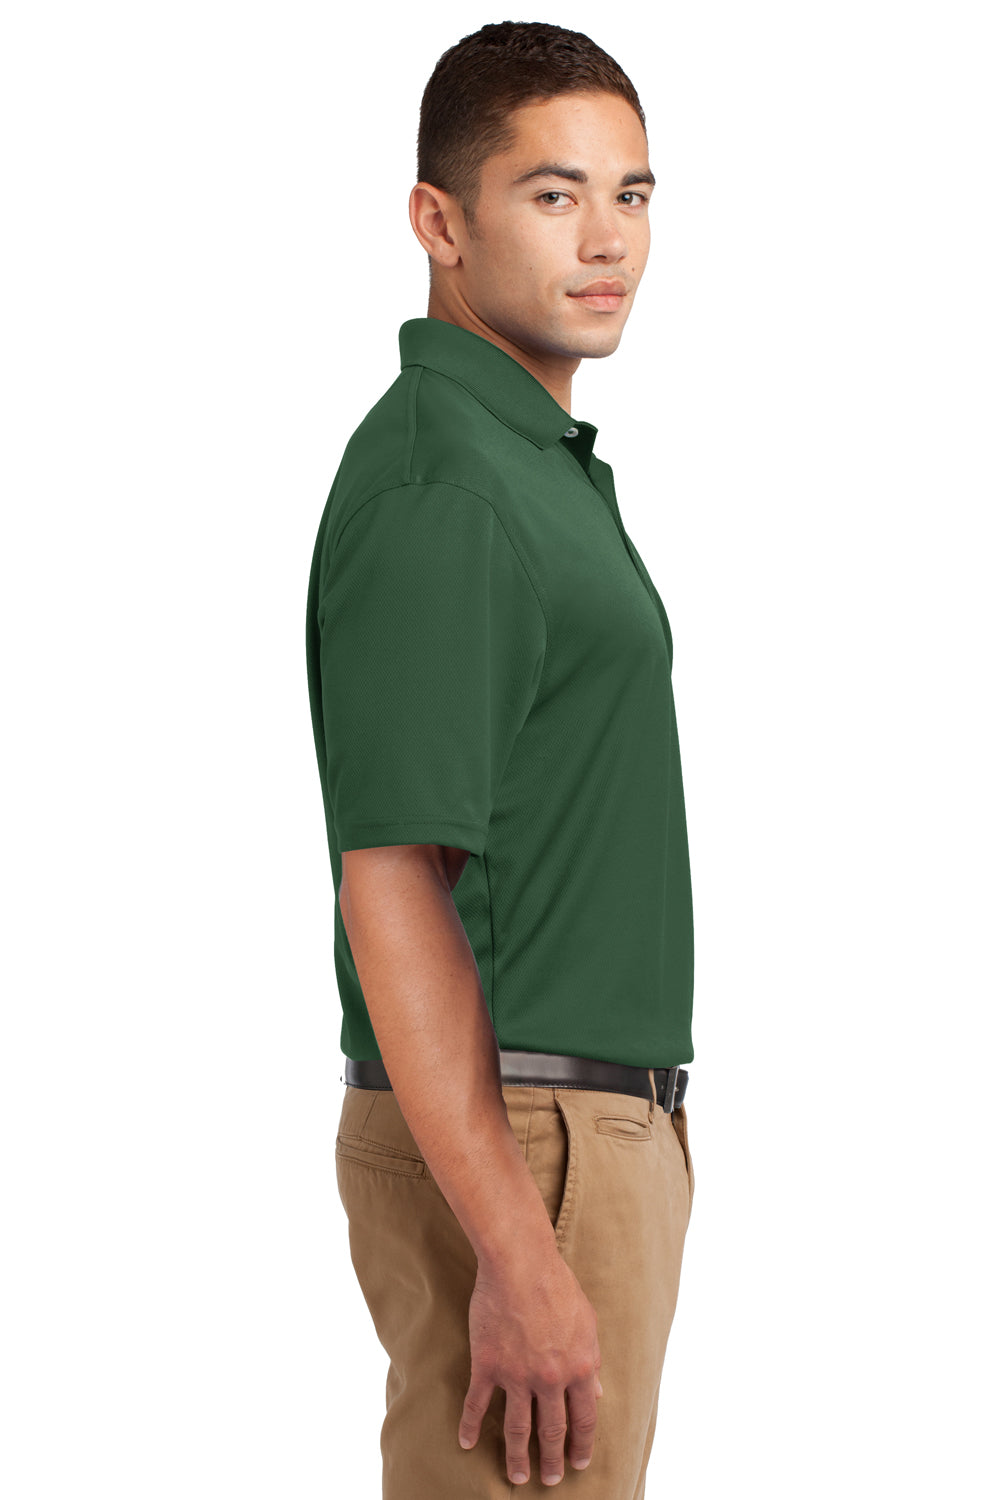 Sport-Tek K469 Mens Dri-Mesh Moisture Wicking Short Sleeve Polo Shirt Forest Green Side